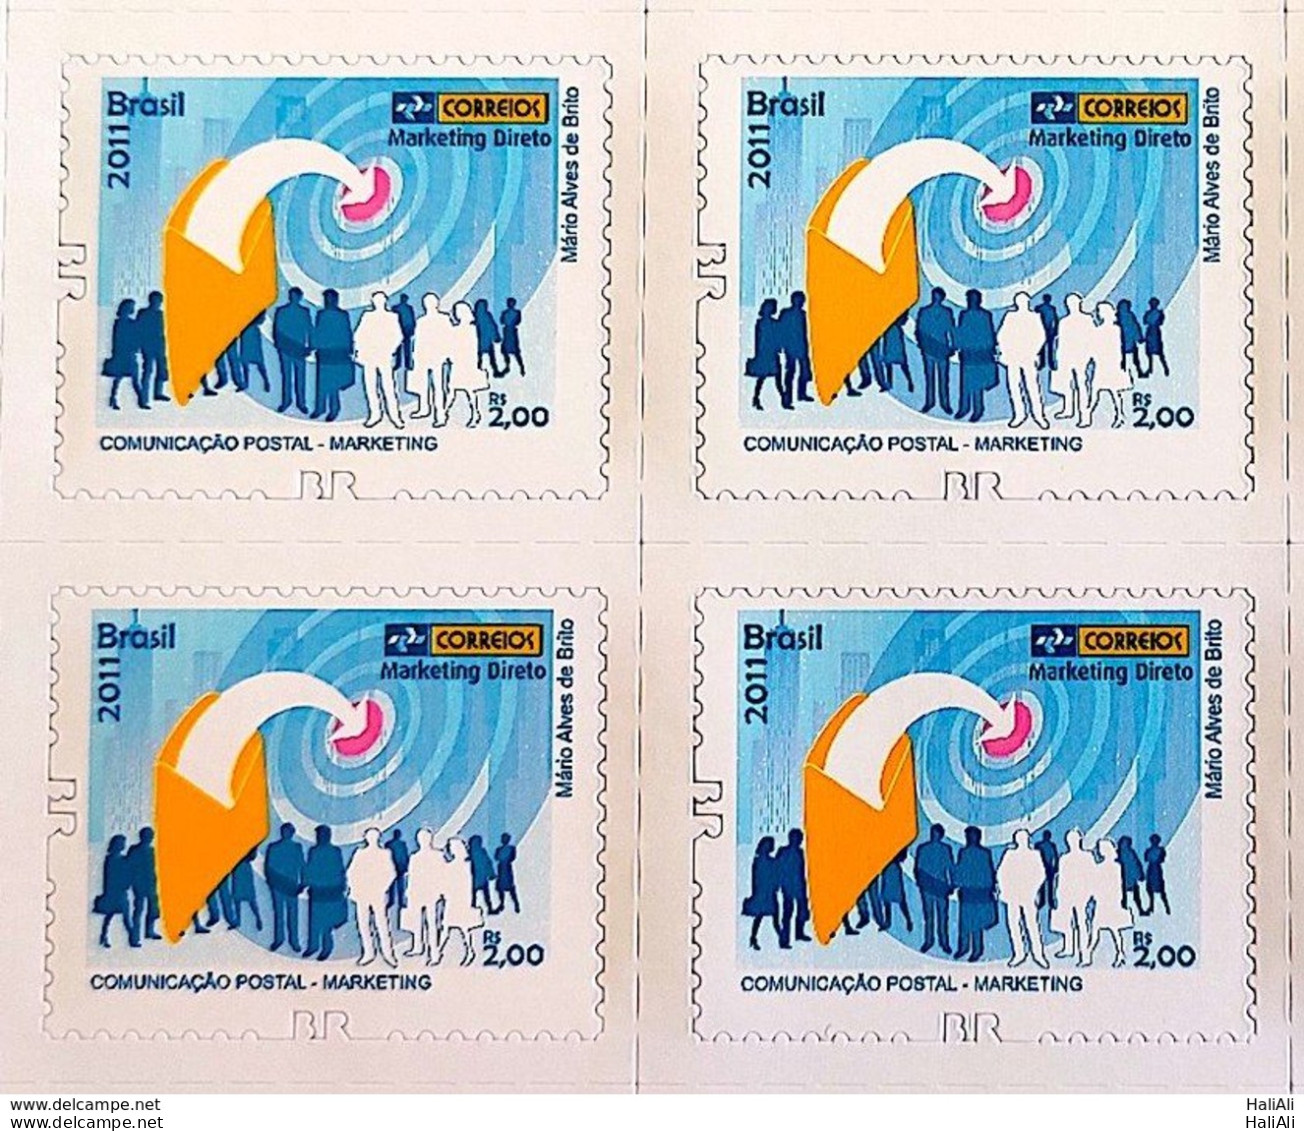 Brazil Regular Stamp RHM 861 Postal Services Marketing Perforation BR 2011 Block Of 4 - Unused Stamps